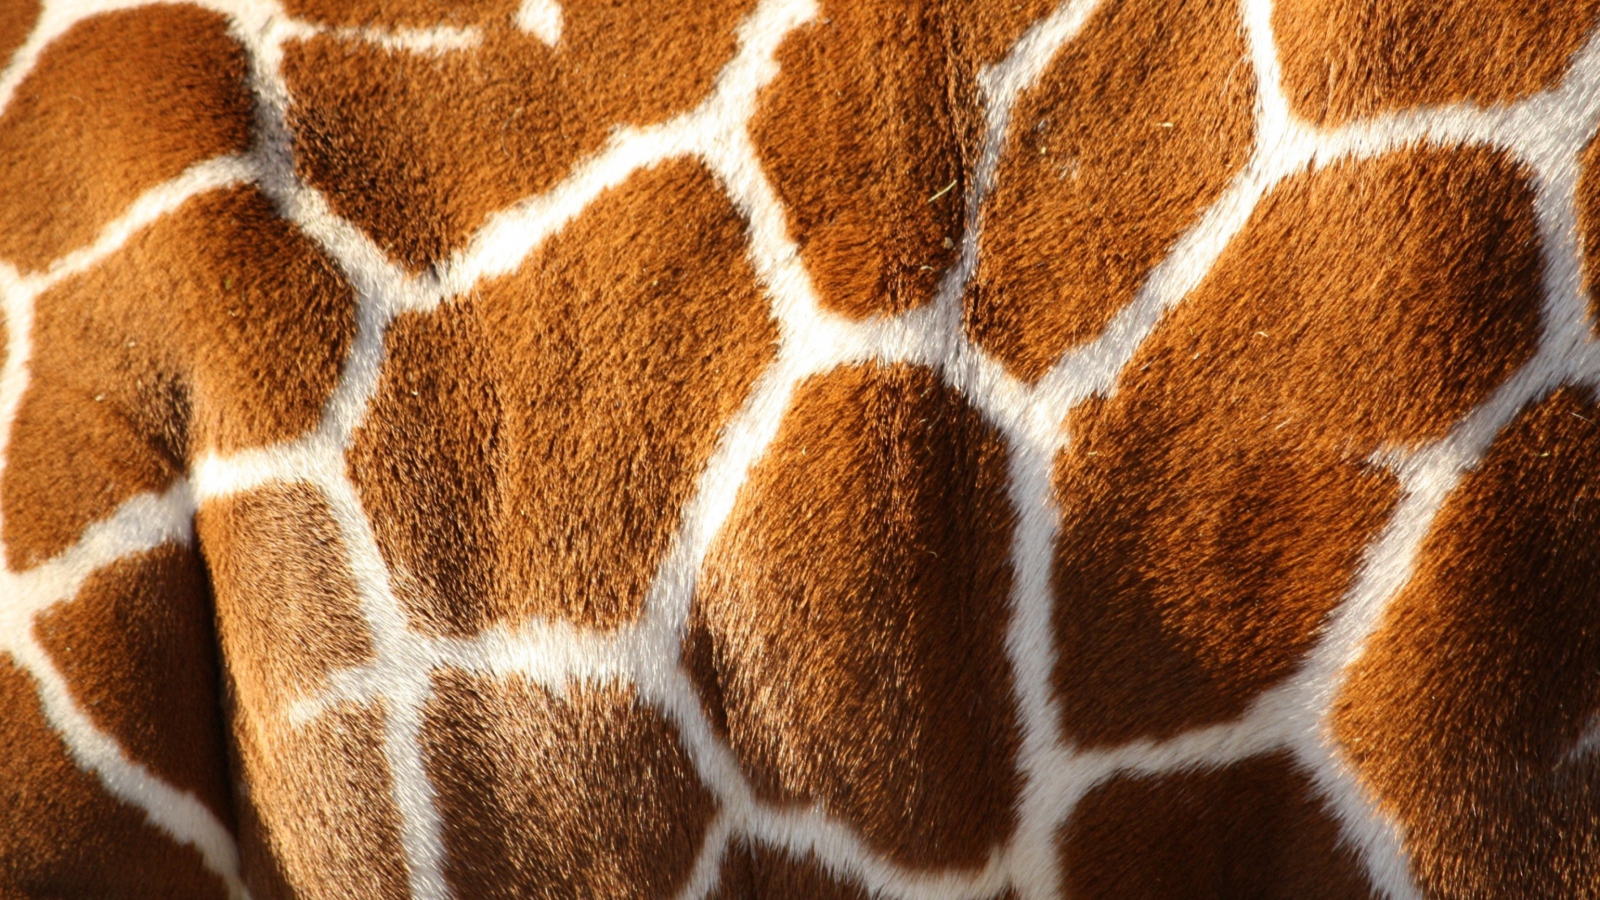 Giraffe wallpaper 1600x900